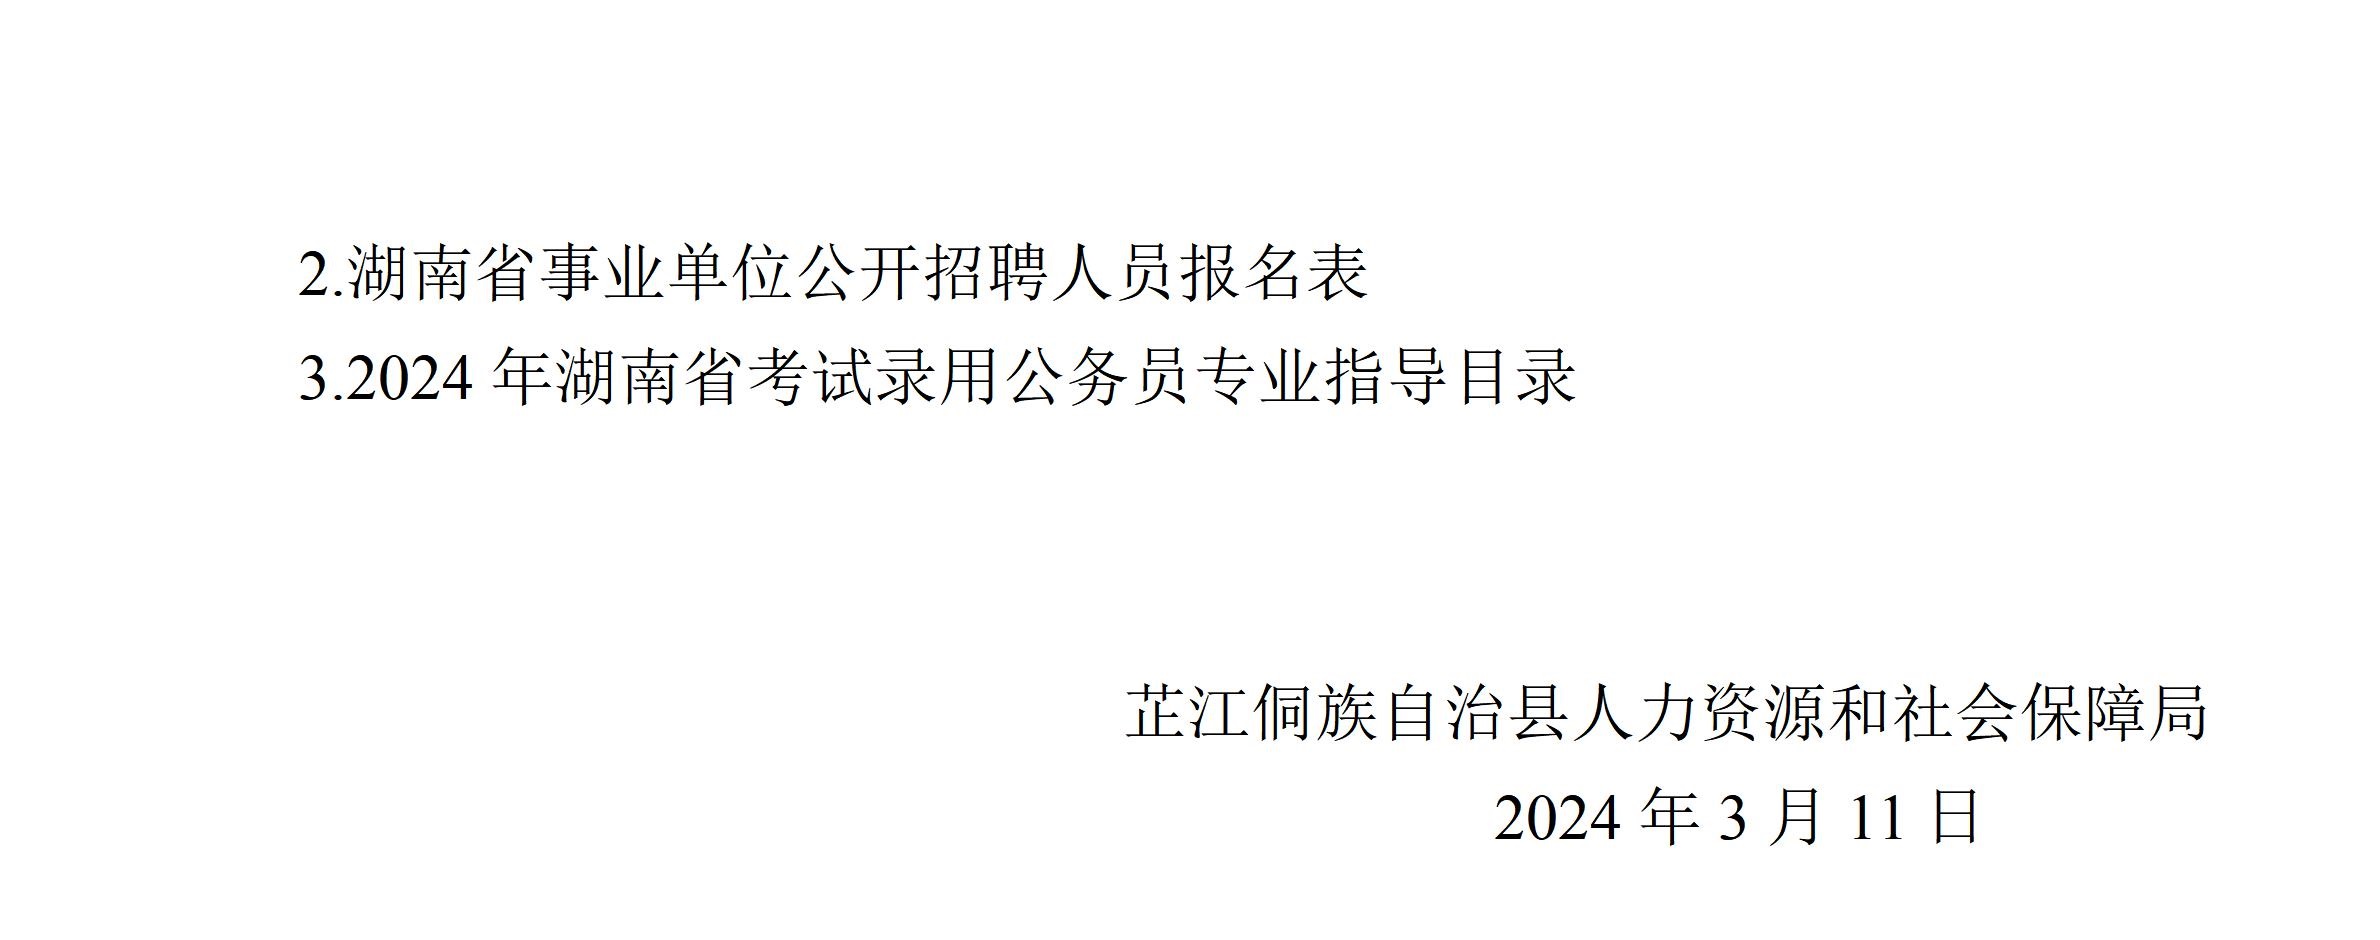 芷江侗族自治县2024年第二批公开招聘事业单位工作人员公告_06.jpg